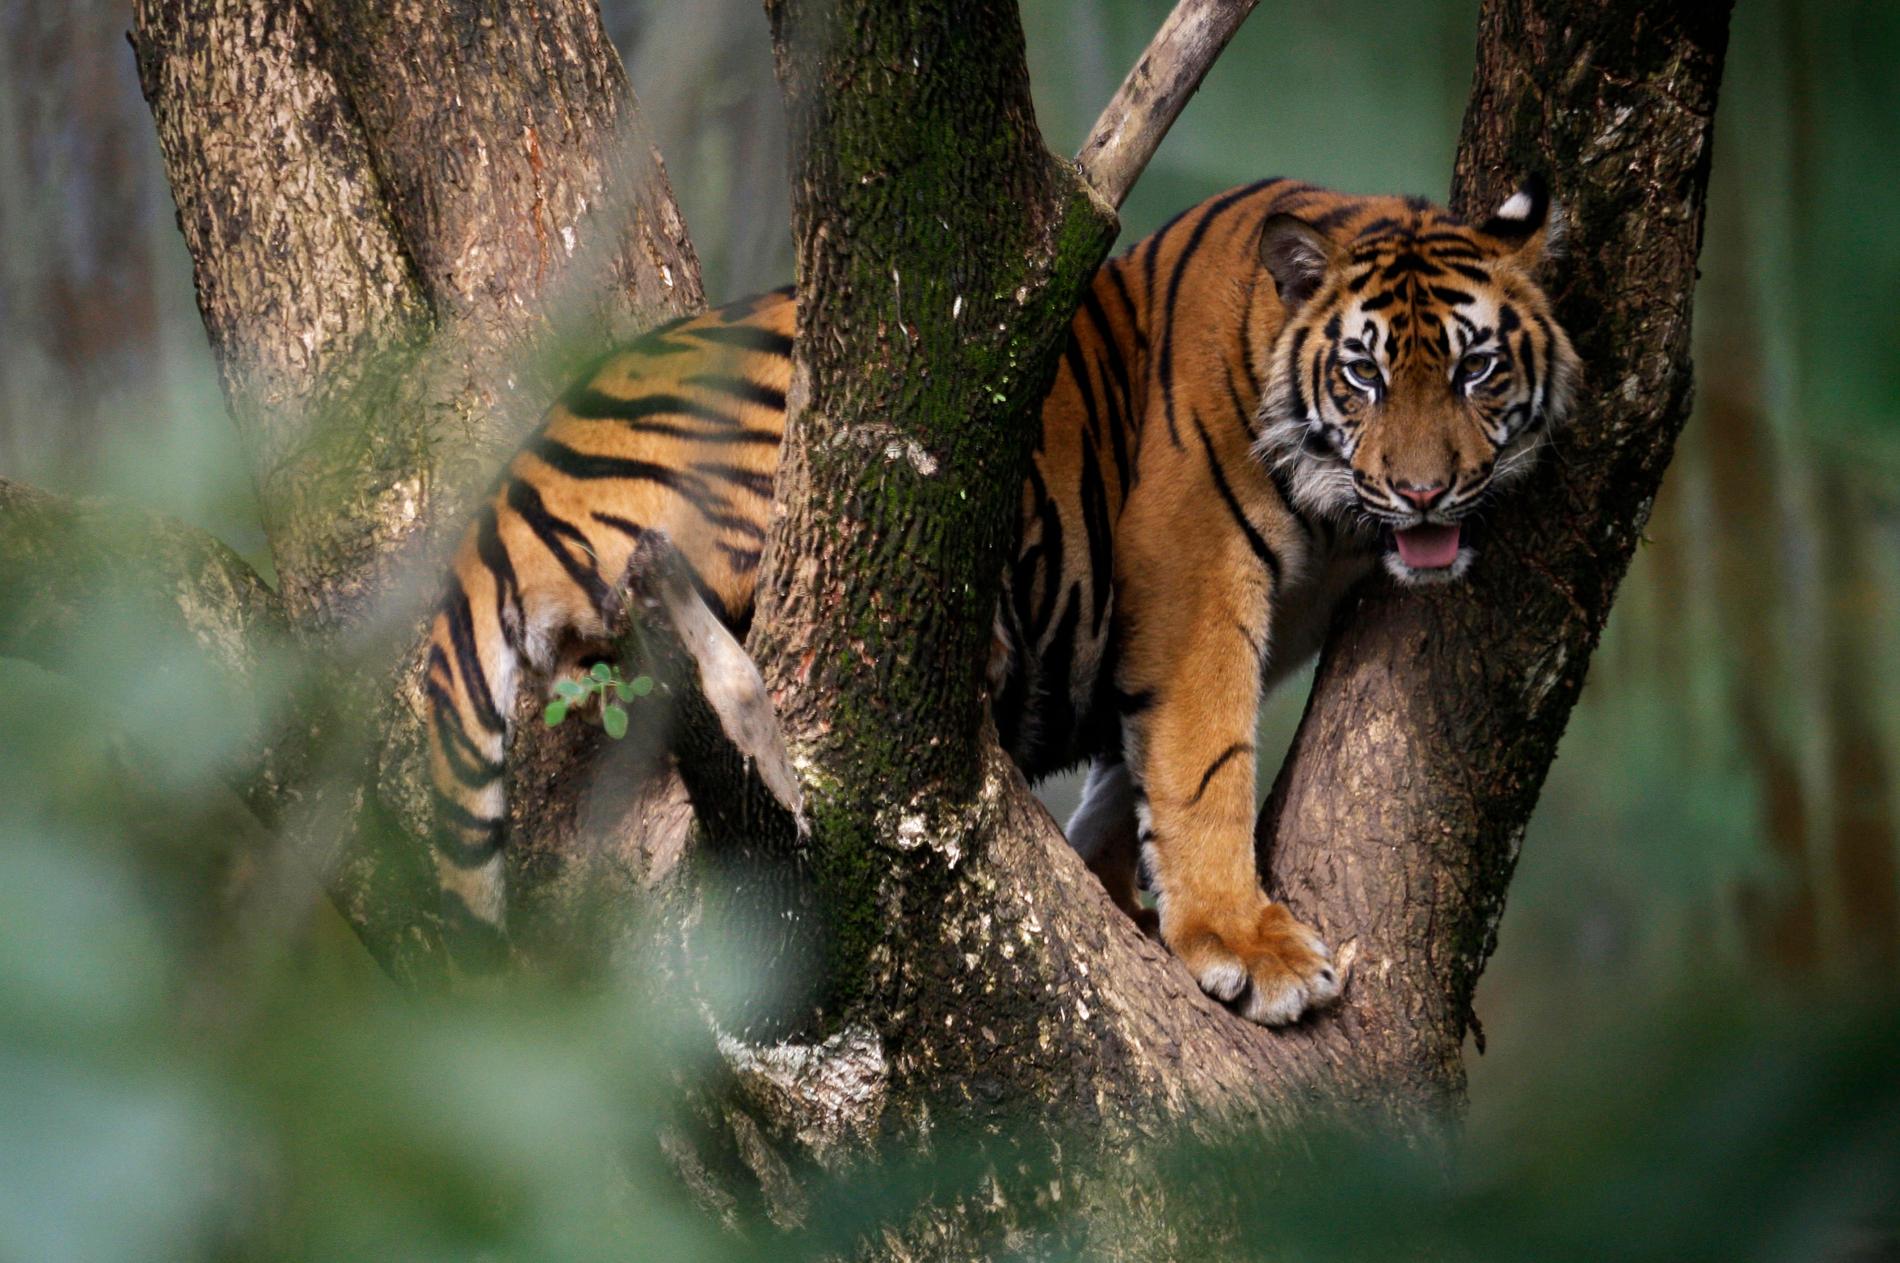 Sumatratigern är utrotningshotad och står nu inför ännu ett stort problem – brist på mat i Indonesiens djurparker. Arkivbild.